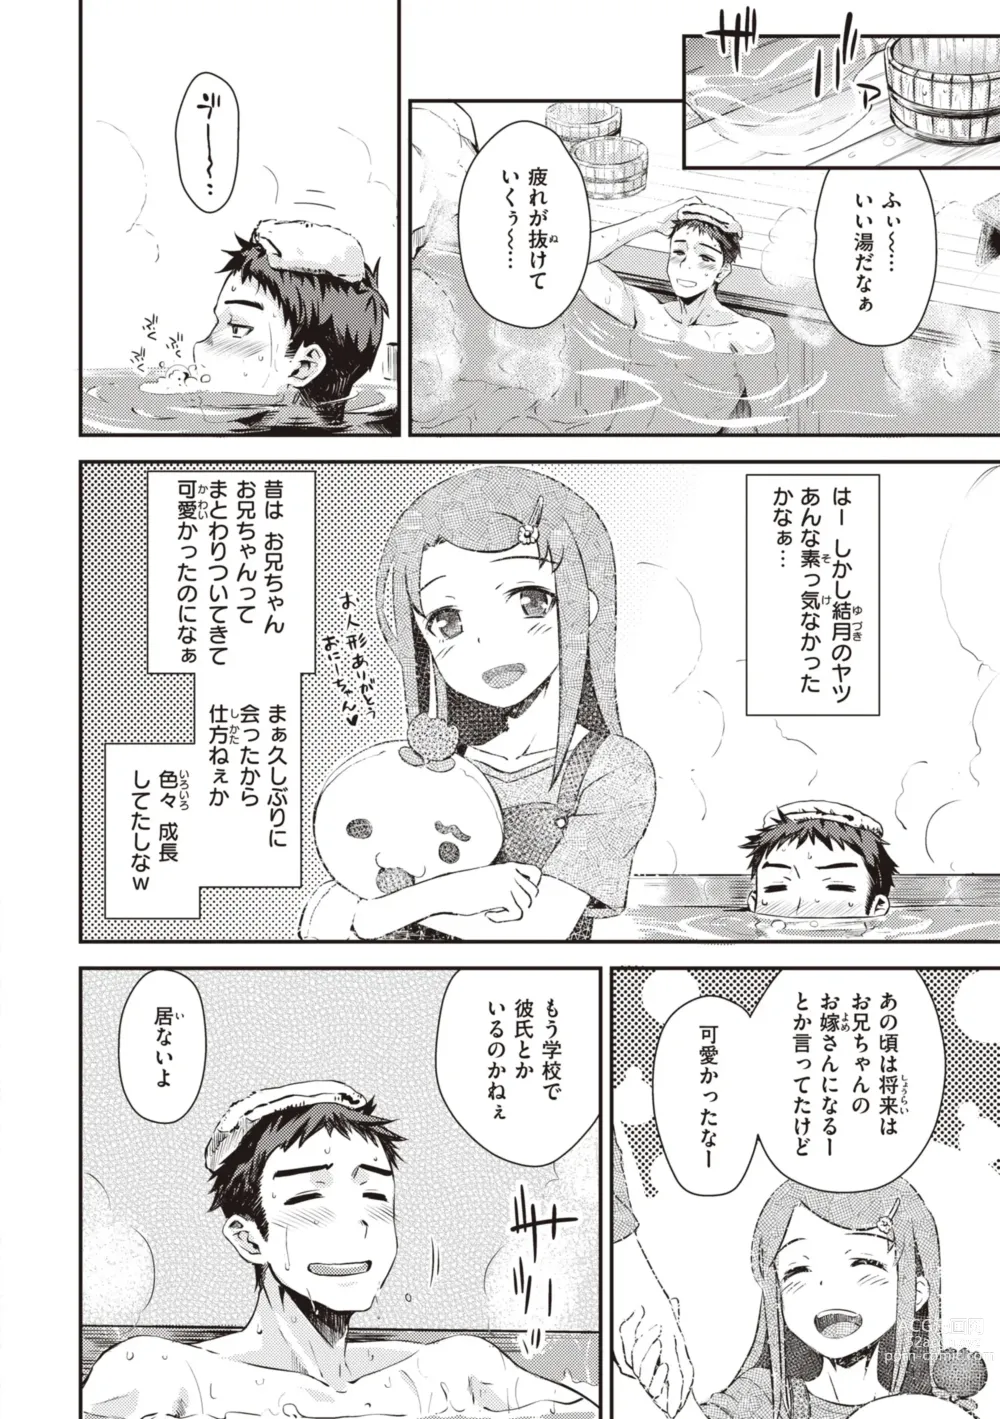 Page 8 of manga Ubukakushi